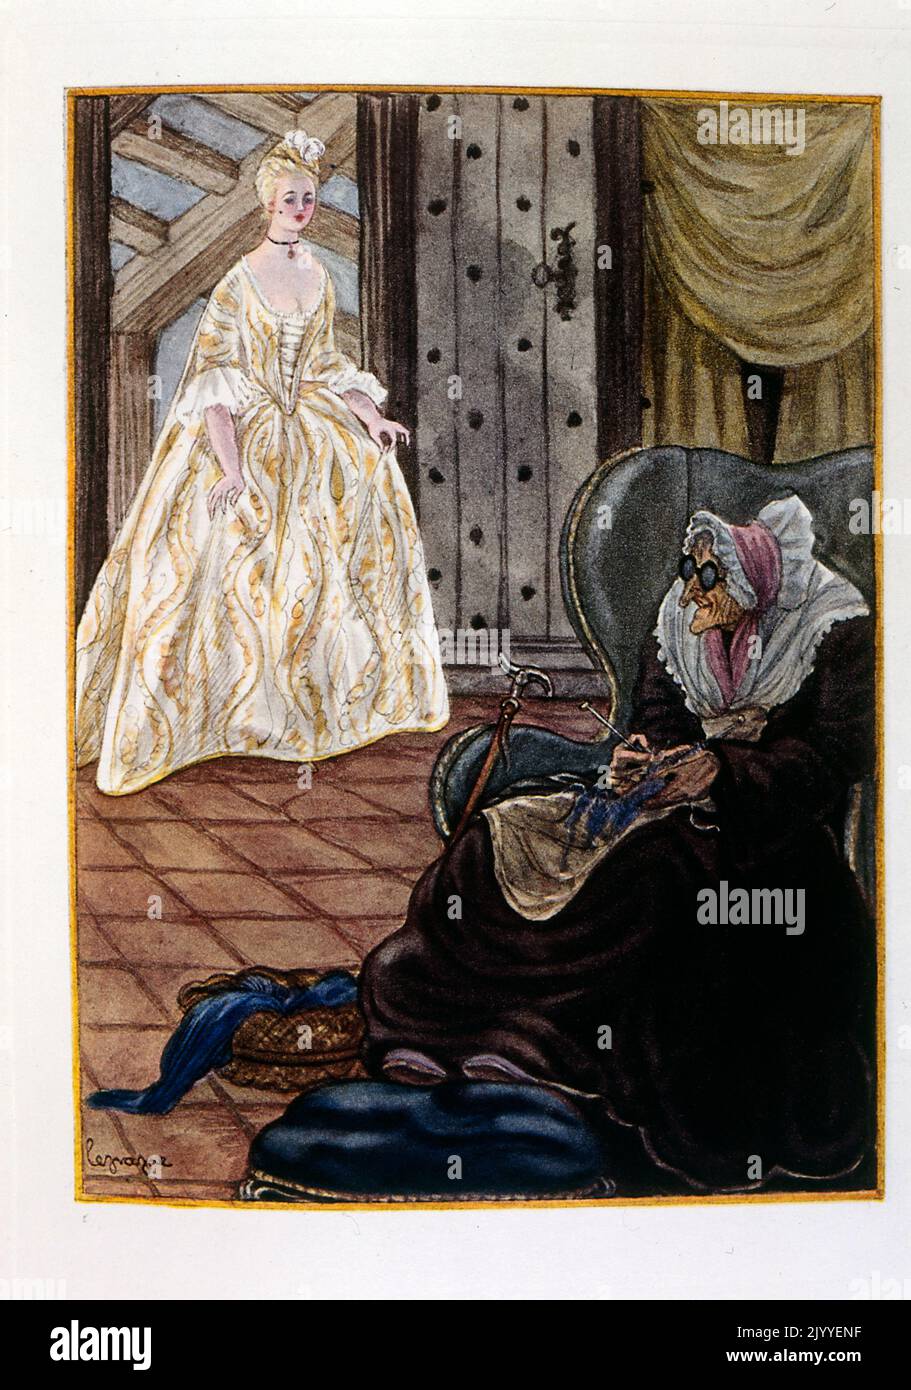 Illustration représentant un ancien hag assis dans son fauteuil tricoter regardant une belle dame entrant dans sa chambre. Par Georges LePape (1887-1971), artiste-peintre français, illustrateur et designer de mode Banque D'Images